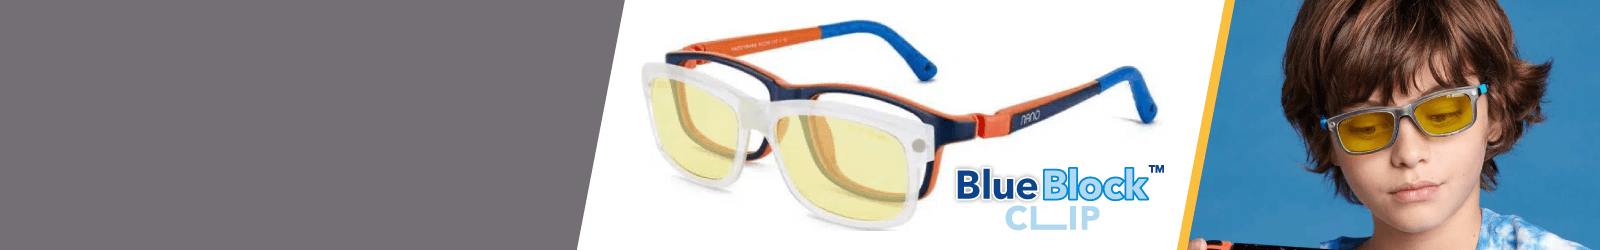 Fuchsia Nano Blue Block Clip Kids Sunglasses